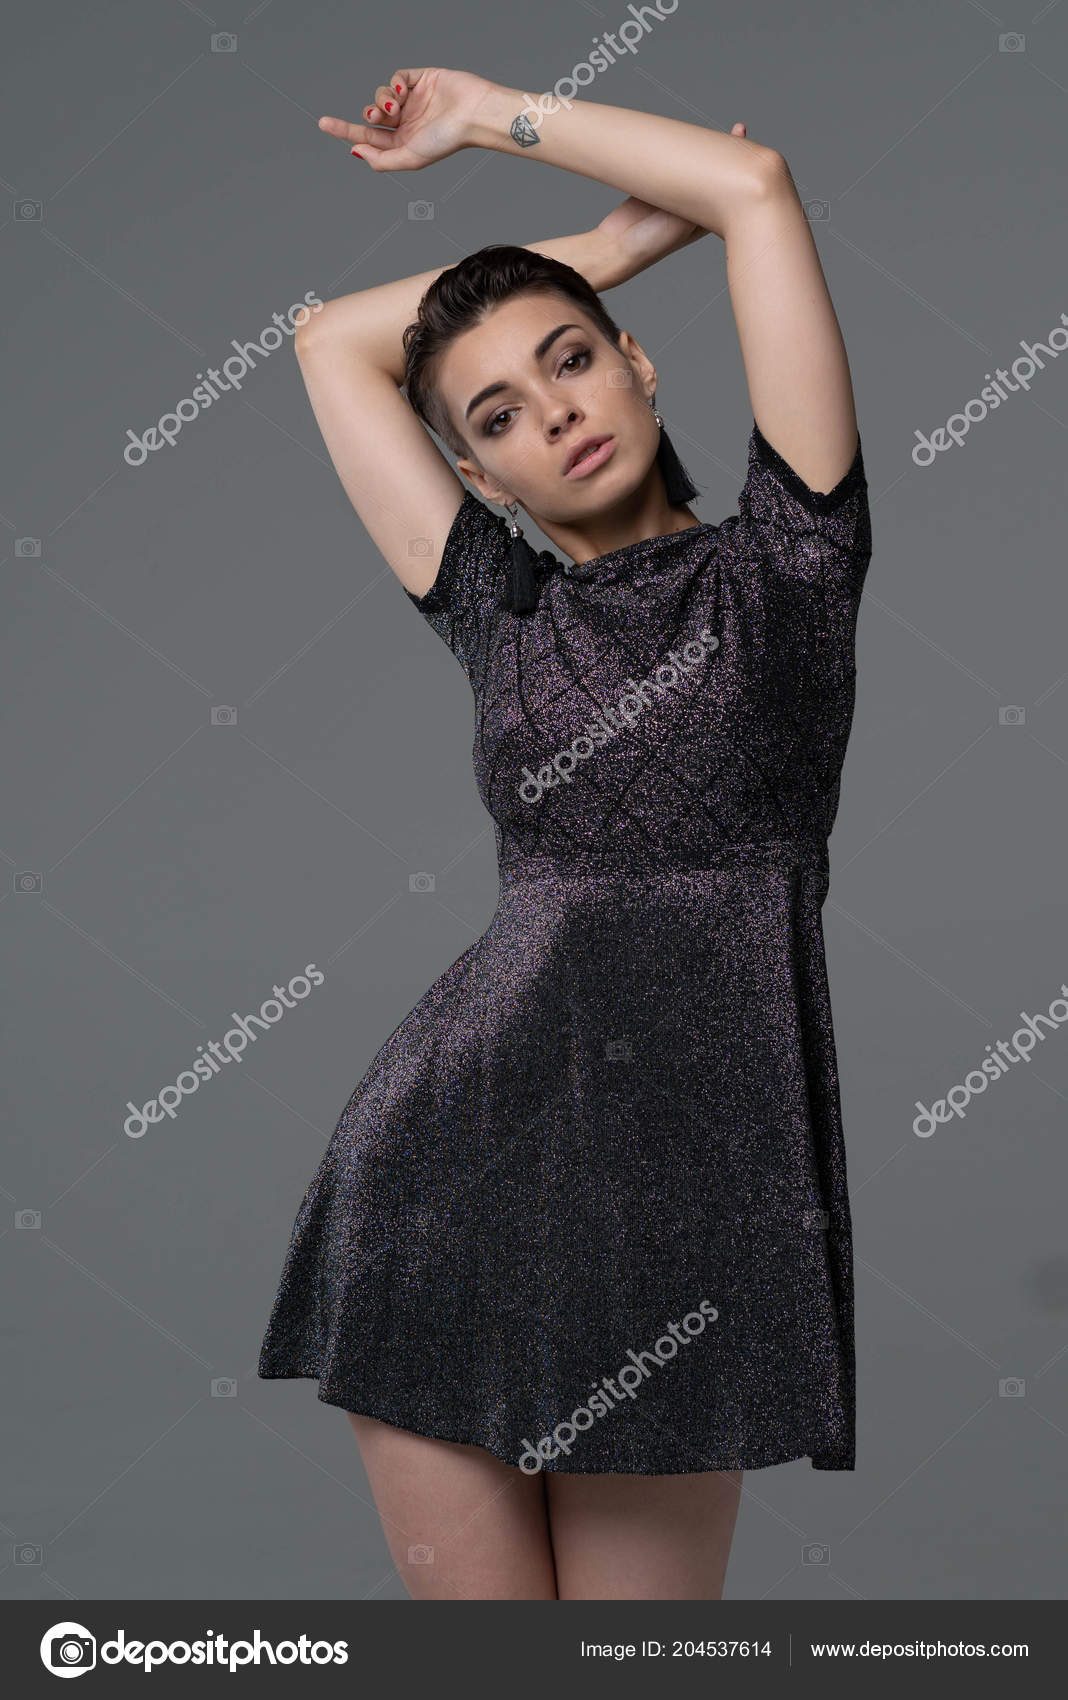 https://st4.depositphotos.com/10086424/20453/i/1600/depositphotos_204537614-stock-photo-young-beautiful-girl-posing-studio.jpg